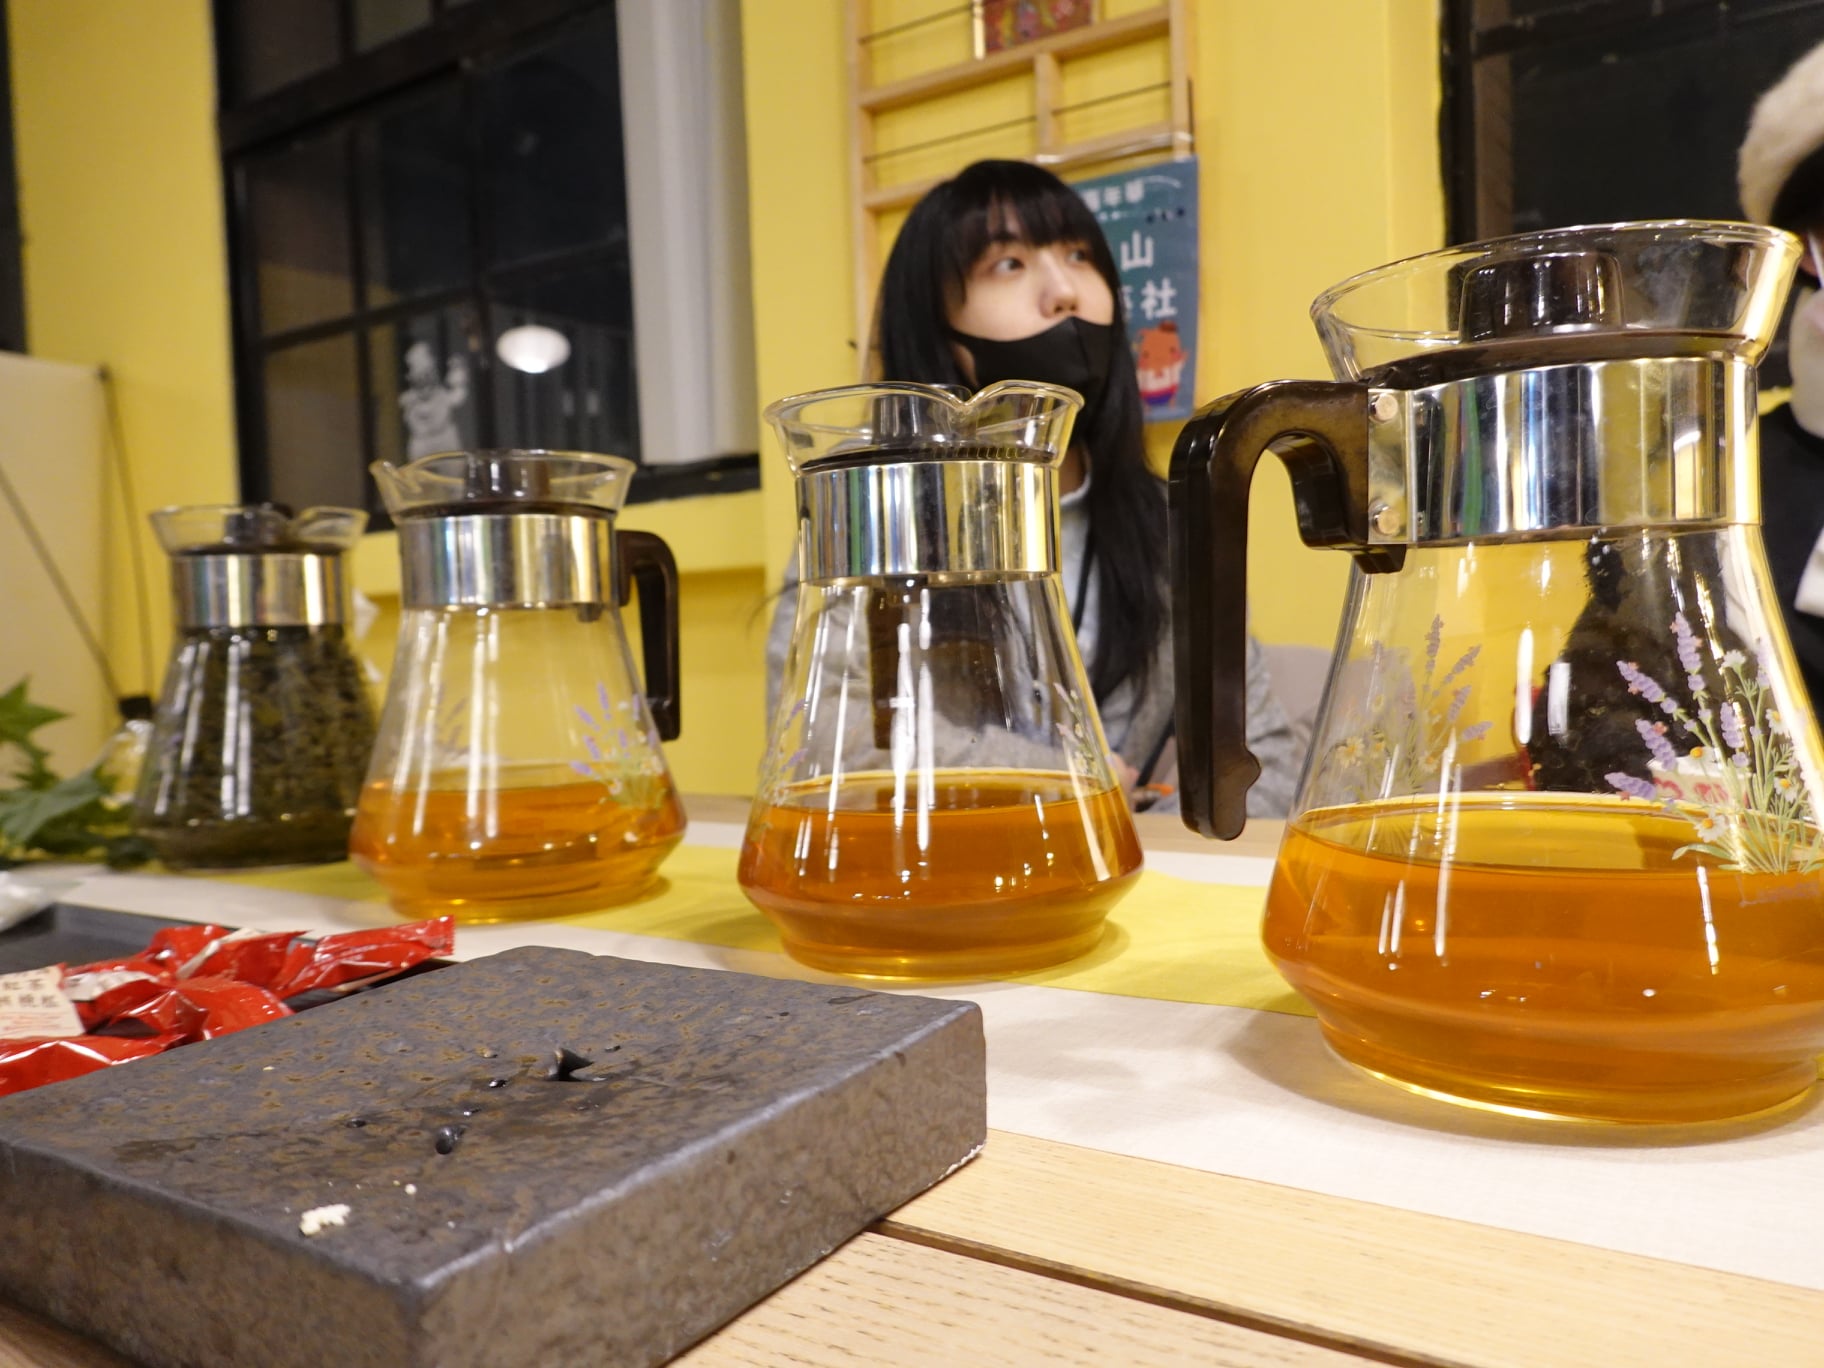 雲山茶藝社準備了不同茶給同學品嚐